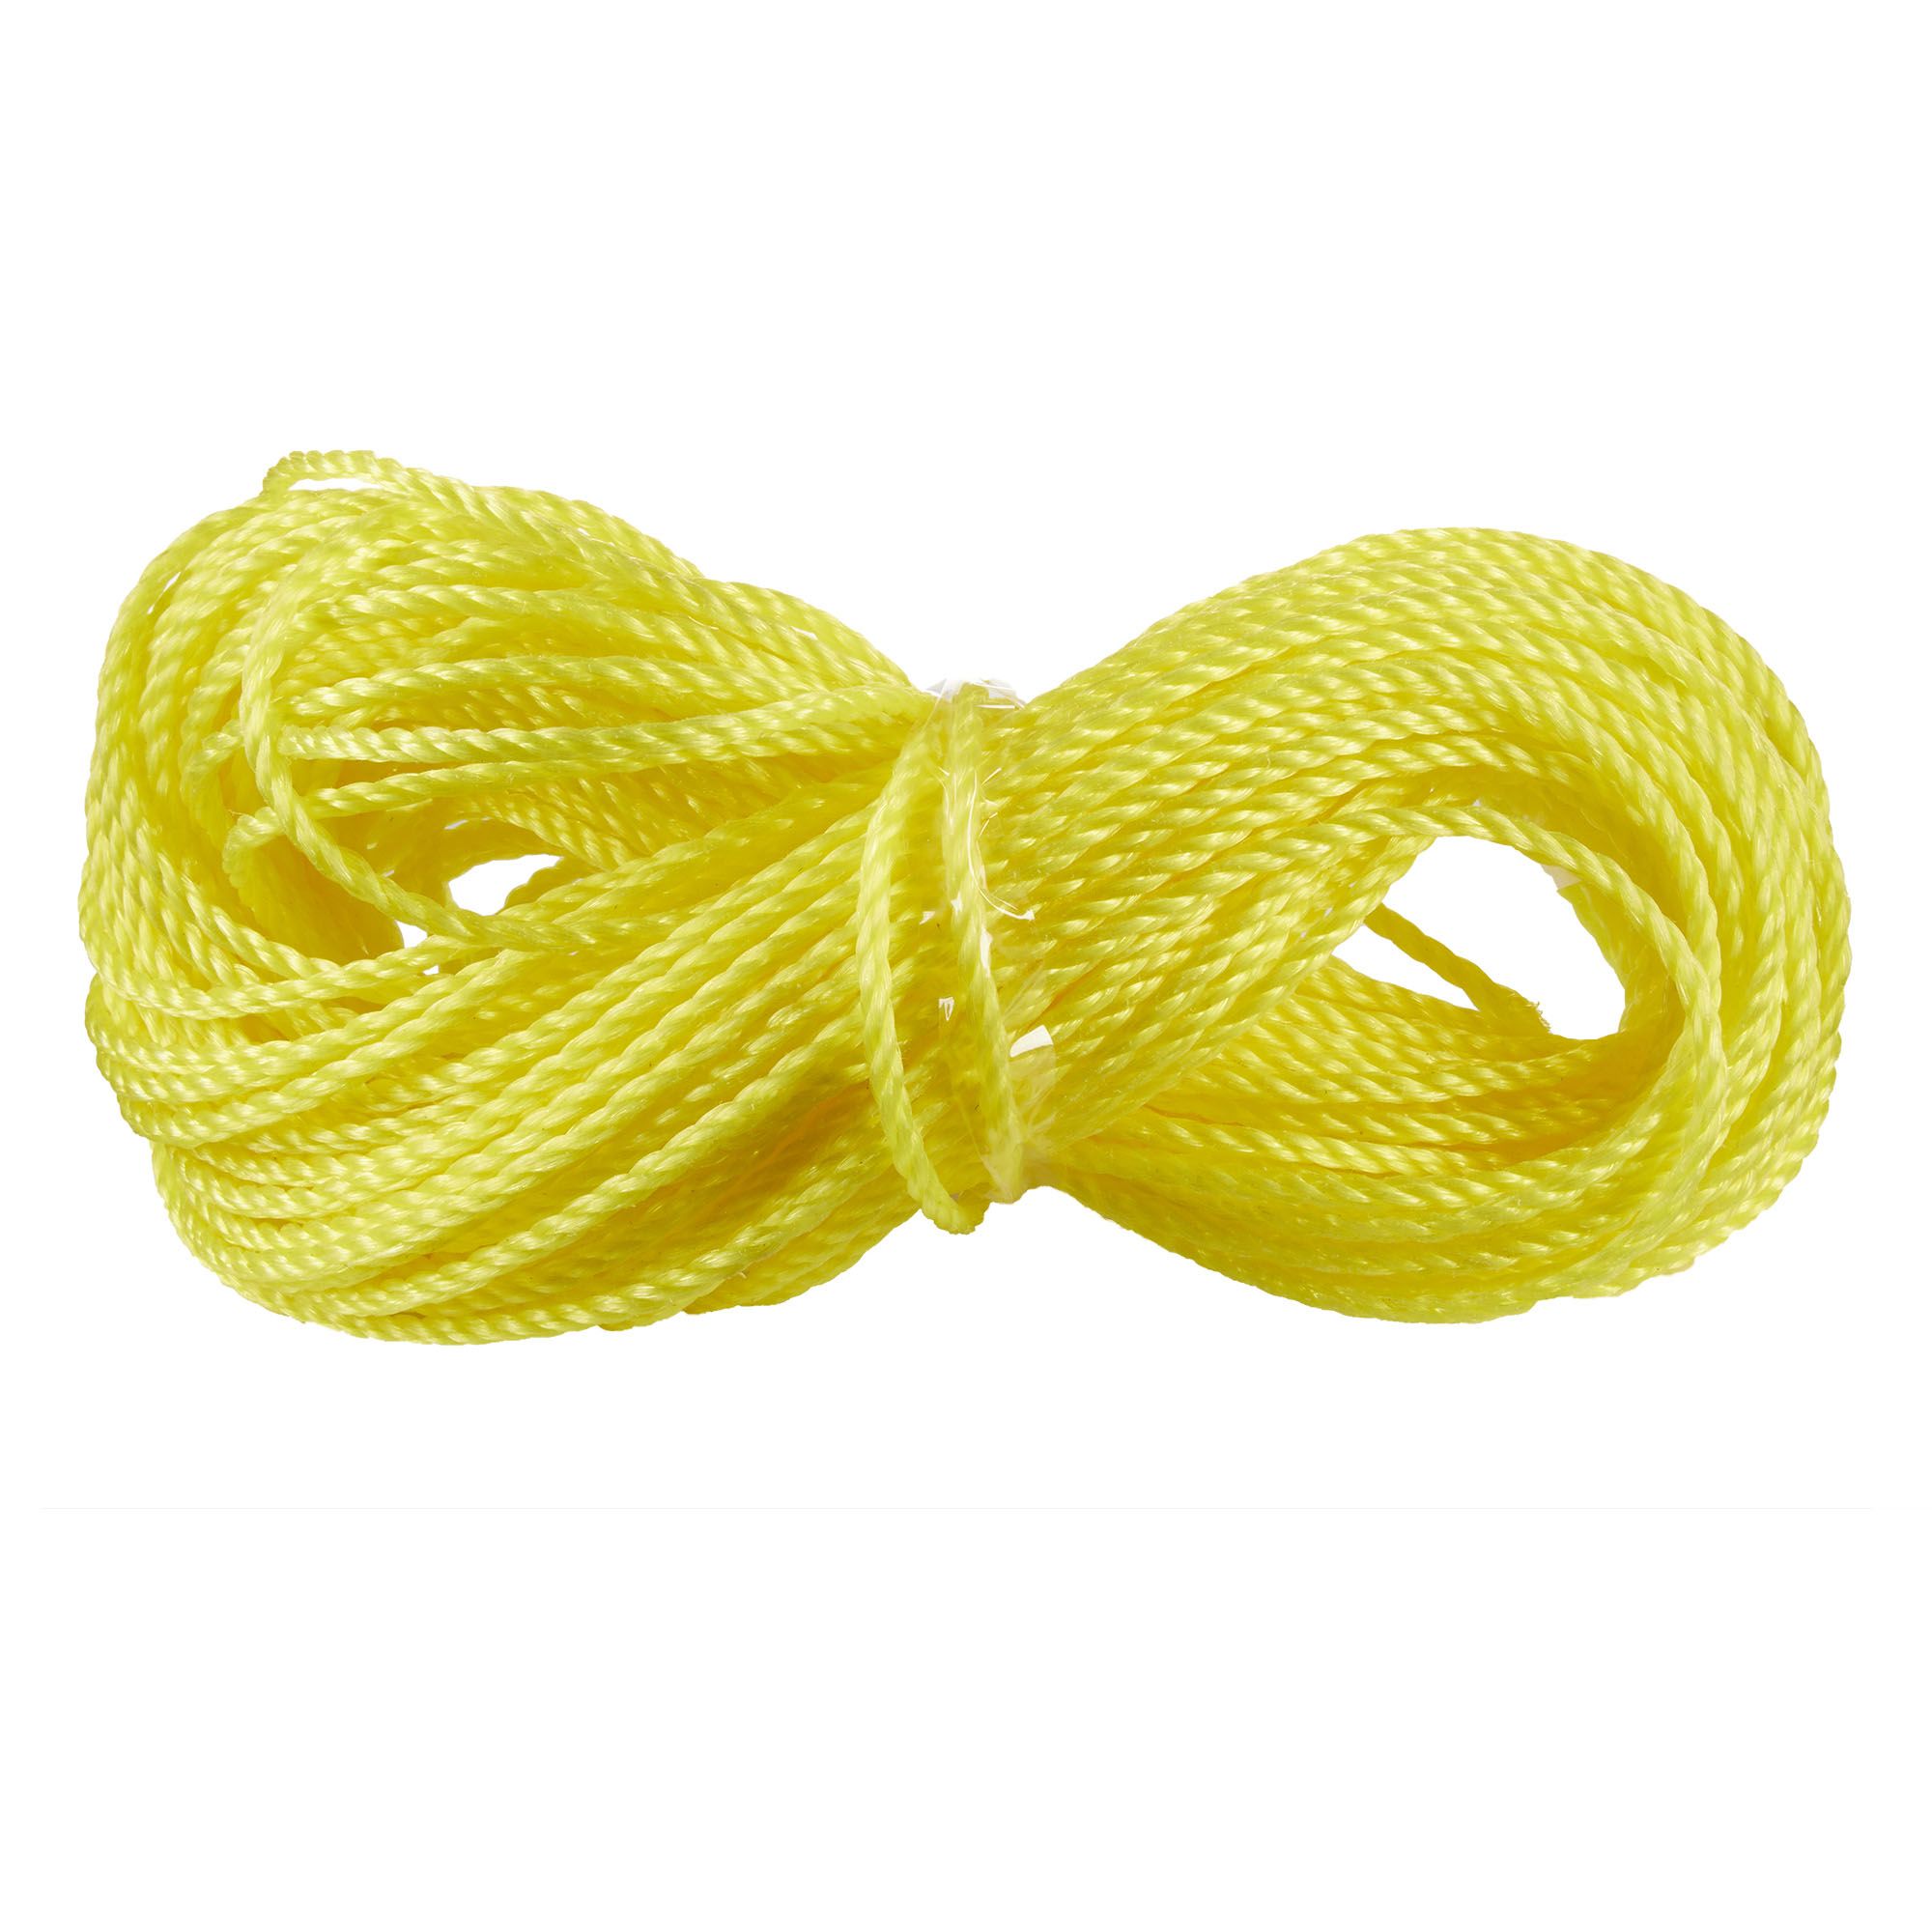 100 pieds de corde jaune